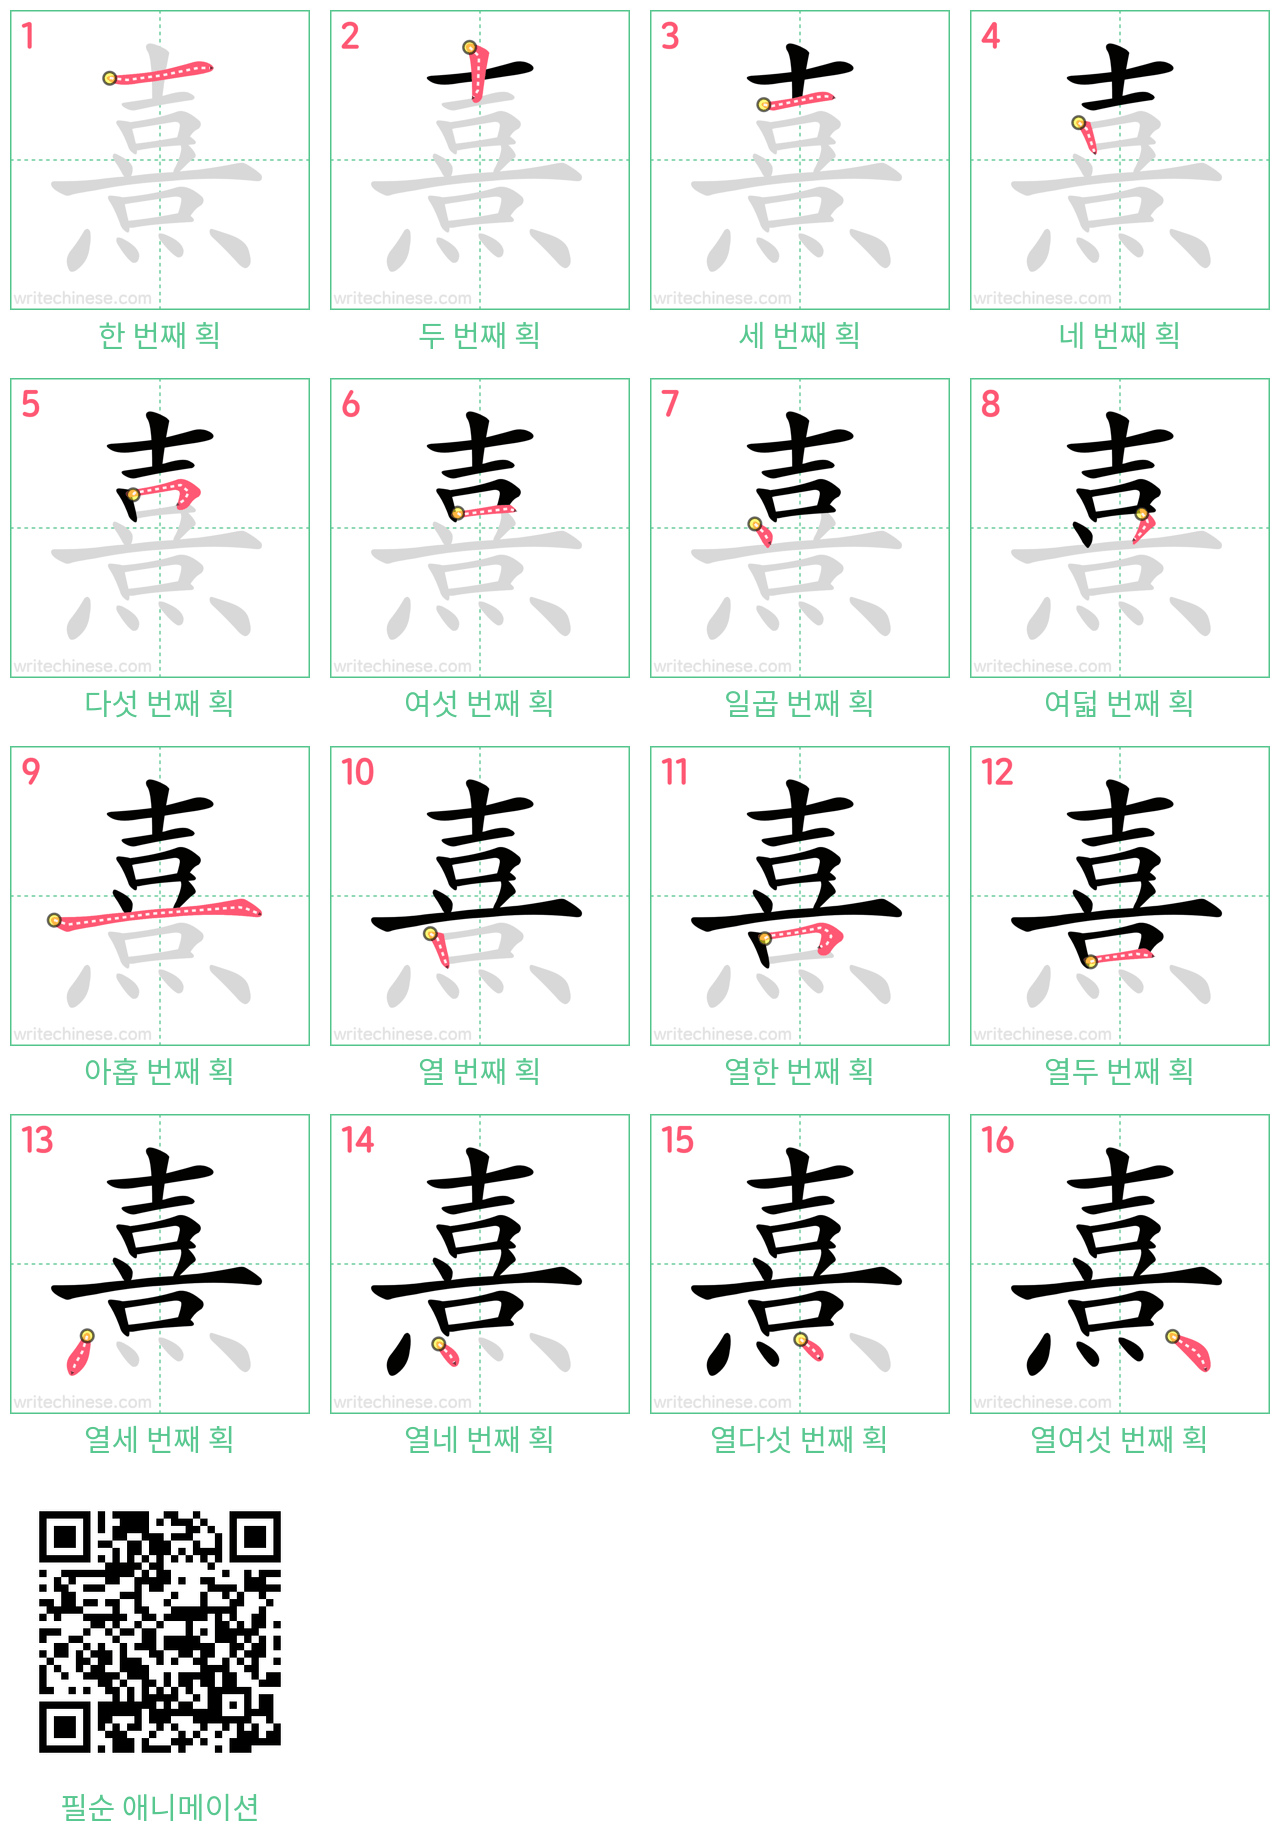 熹 step-by-step stroke order diagrams